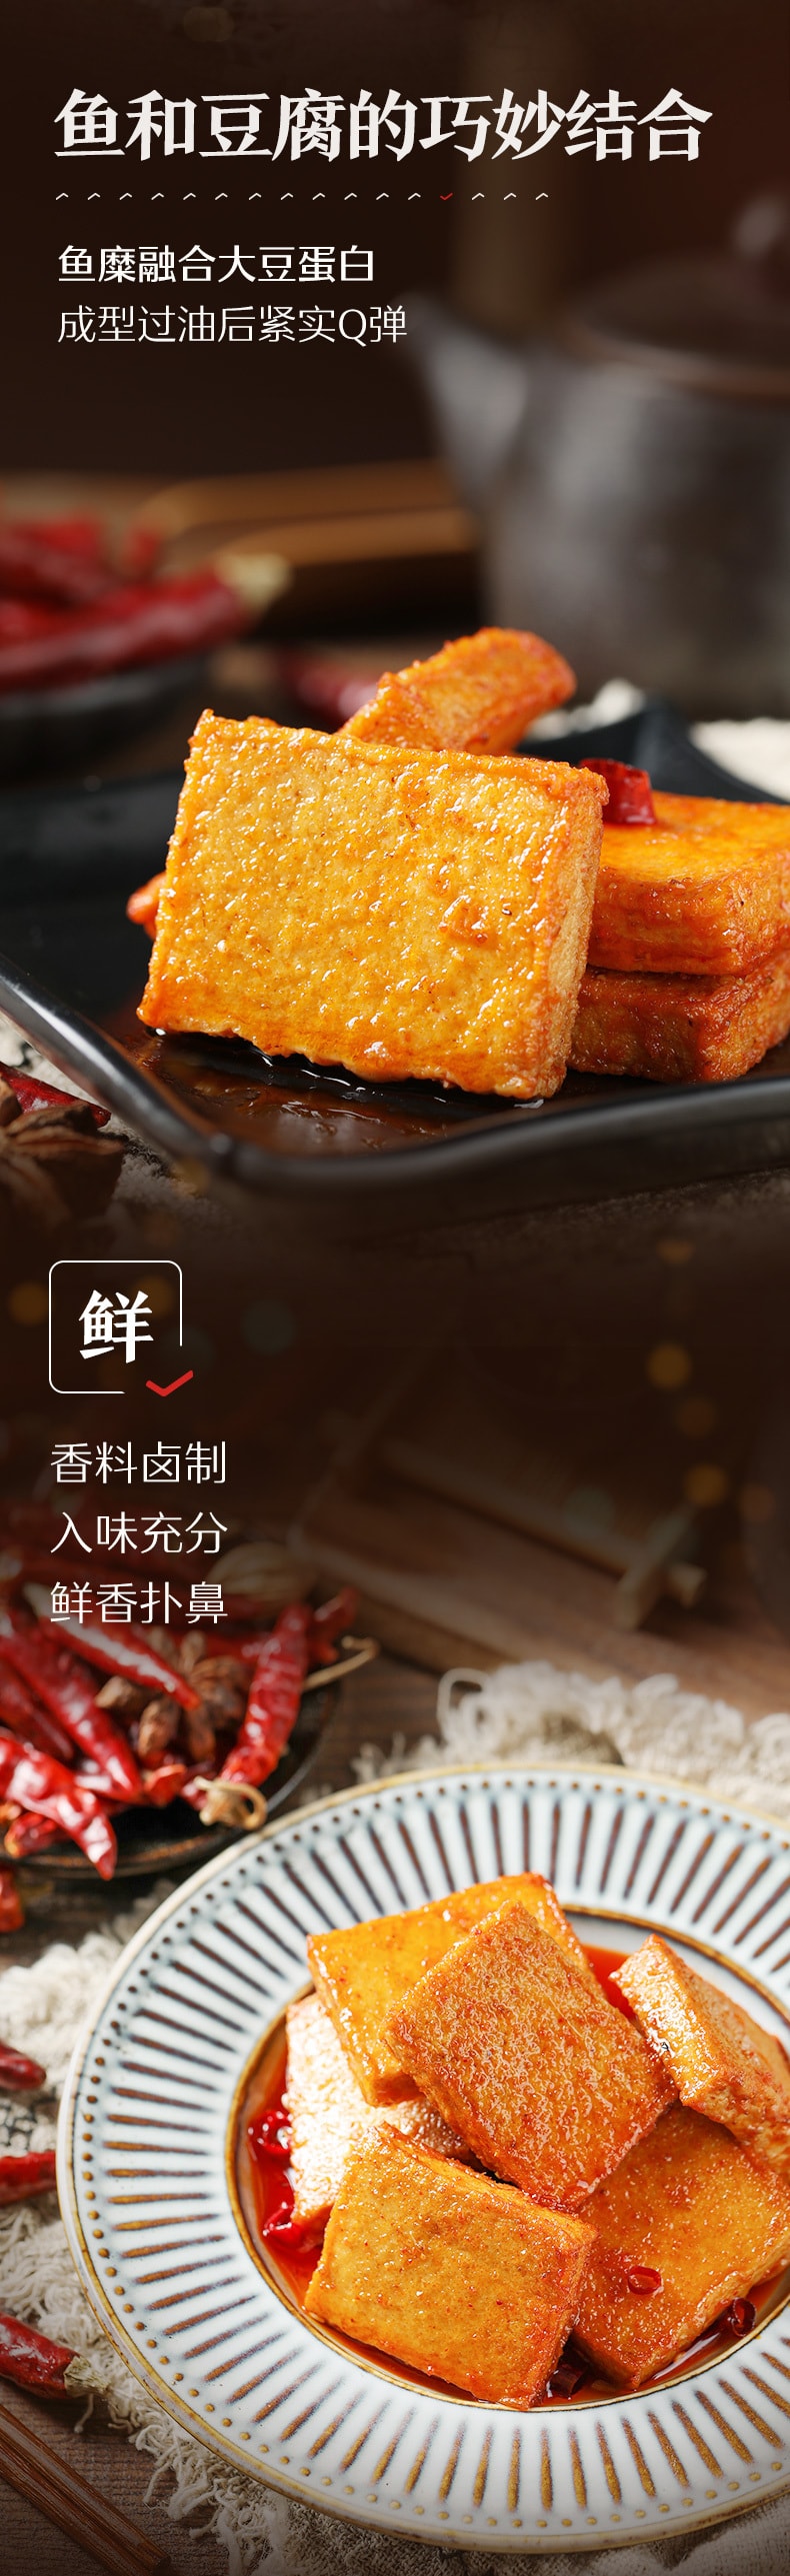 [中国直邮]良品铺子 BESTORE 鱼豆腐 烧烤味 170g 1袋 